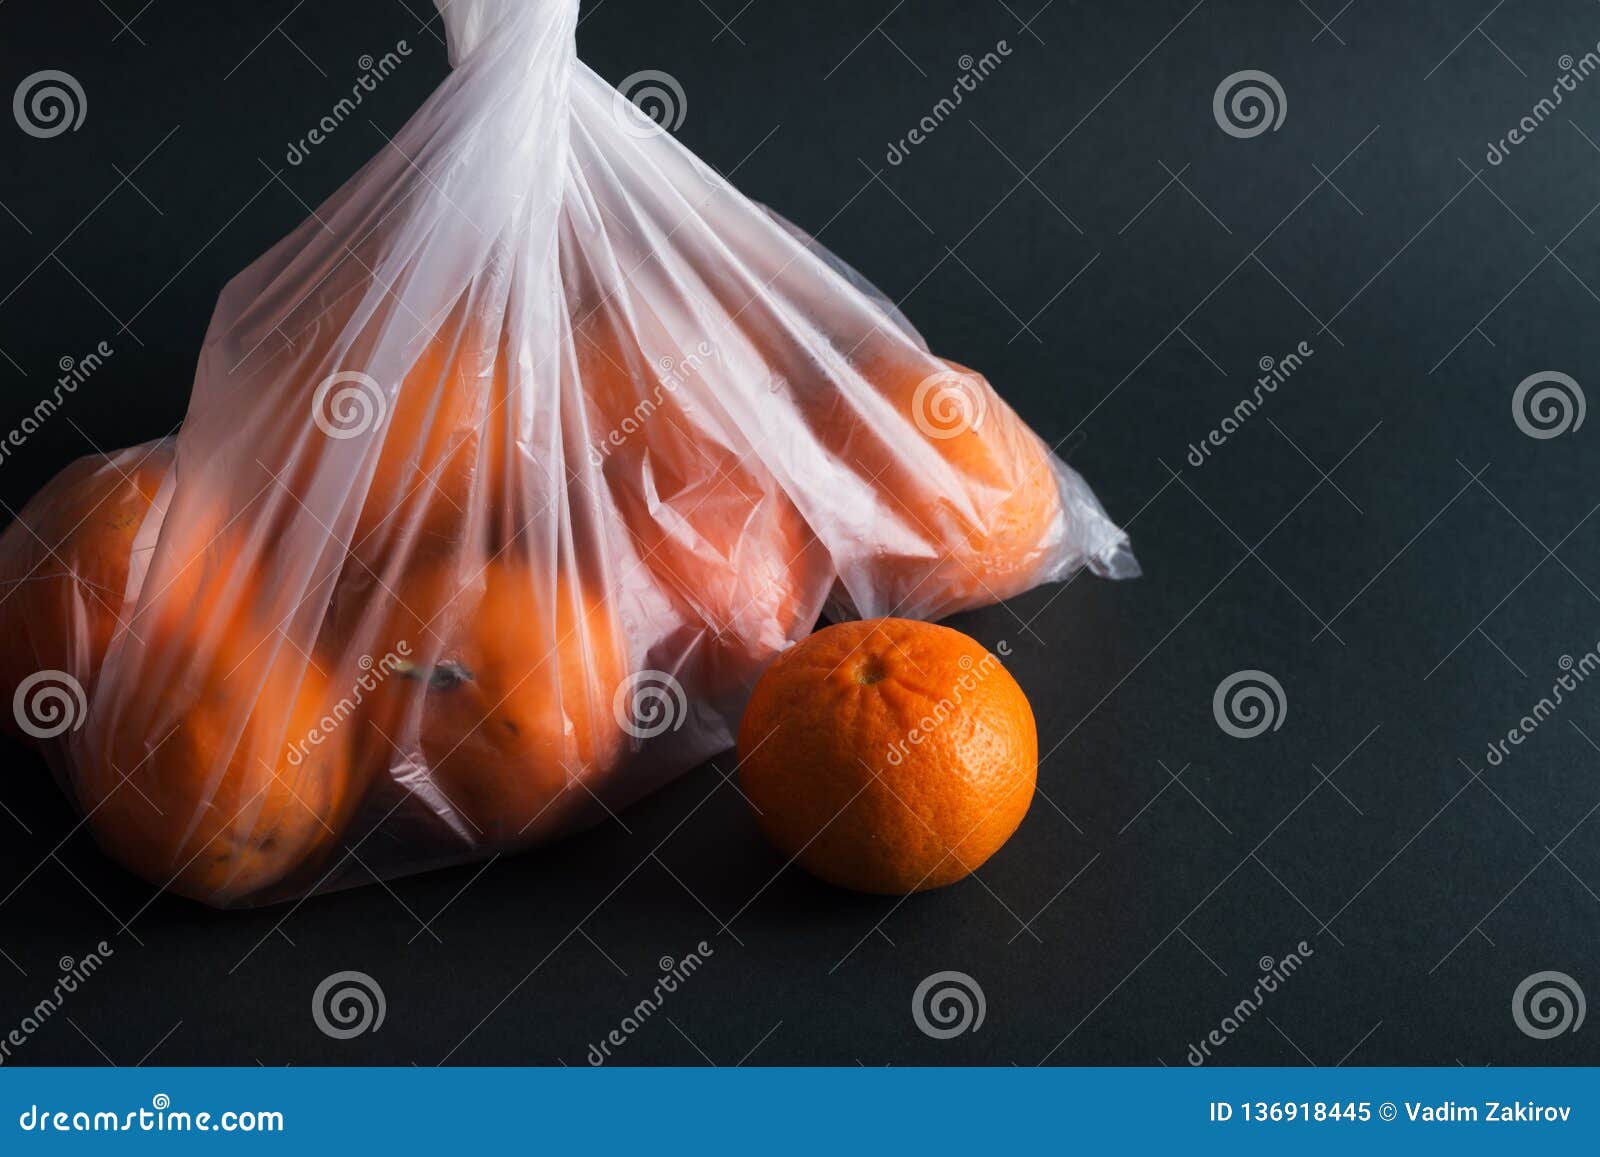 В пакете лежат мандарины. Мандарины в пакете. Апельсины в пакете. Фрукты в целлофановом пакете. Пакет мандаринов.